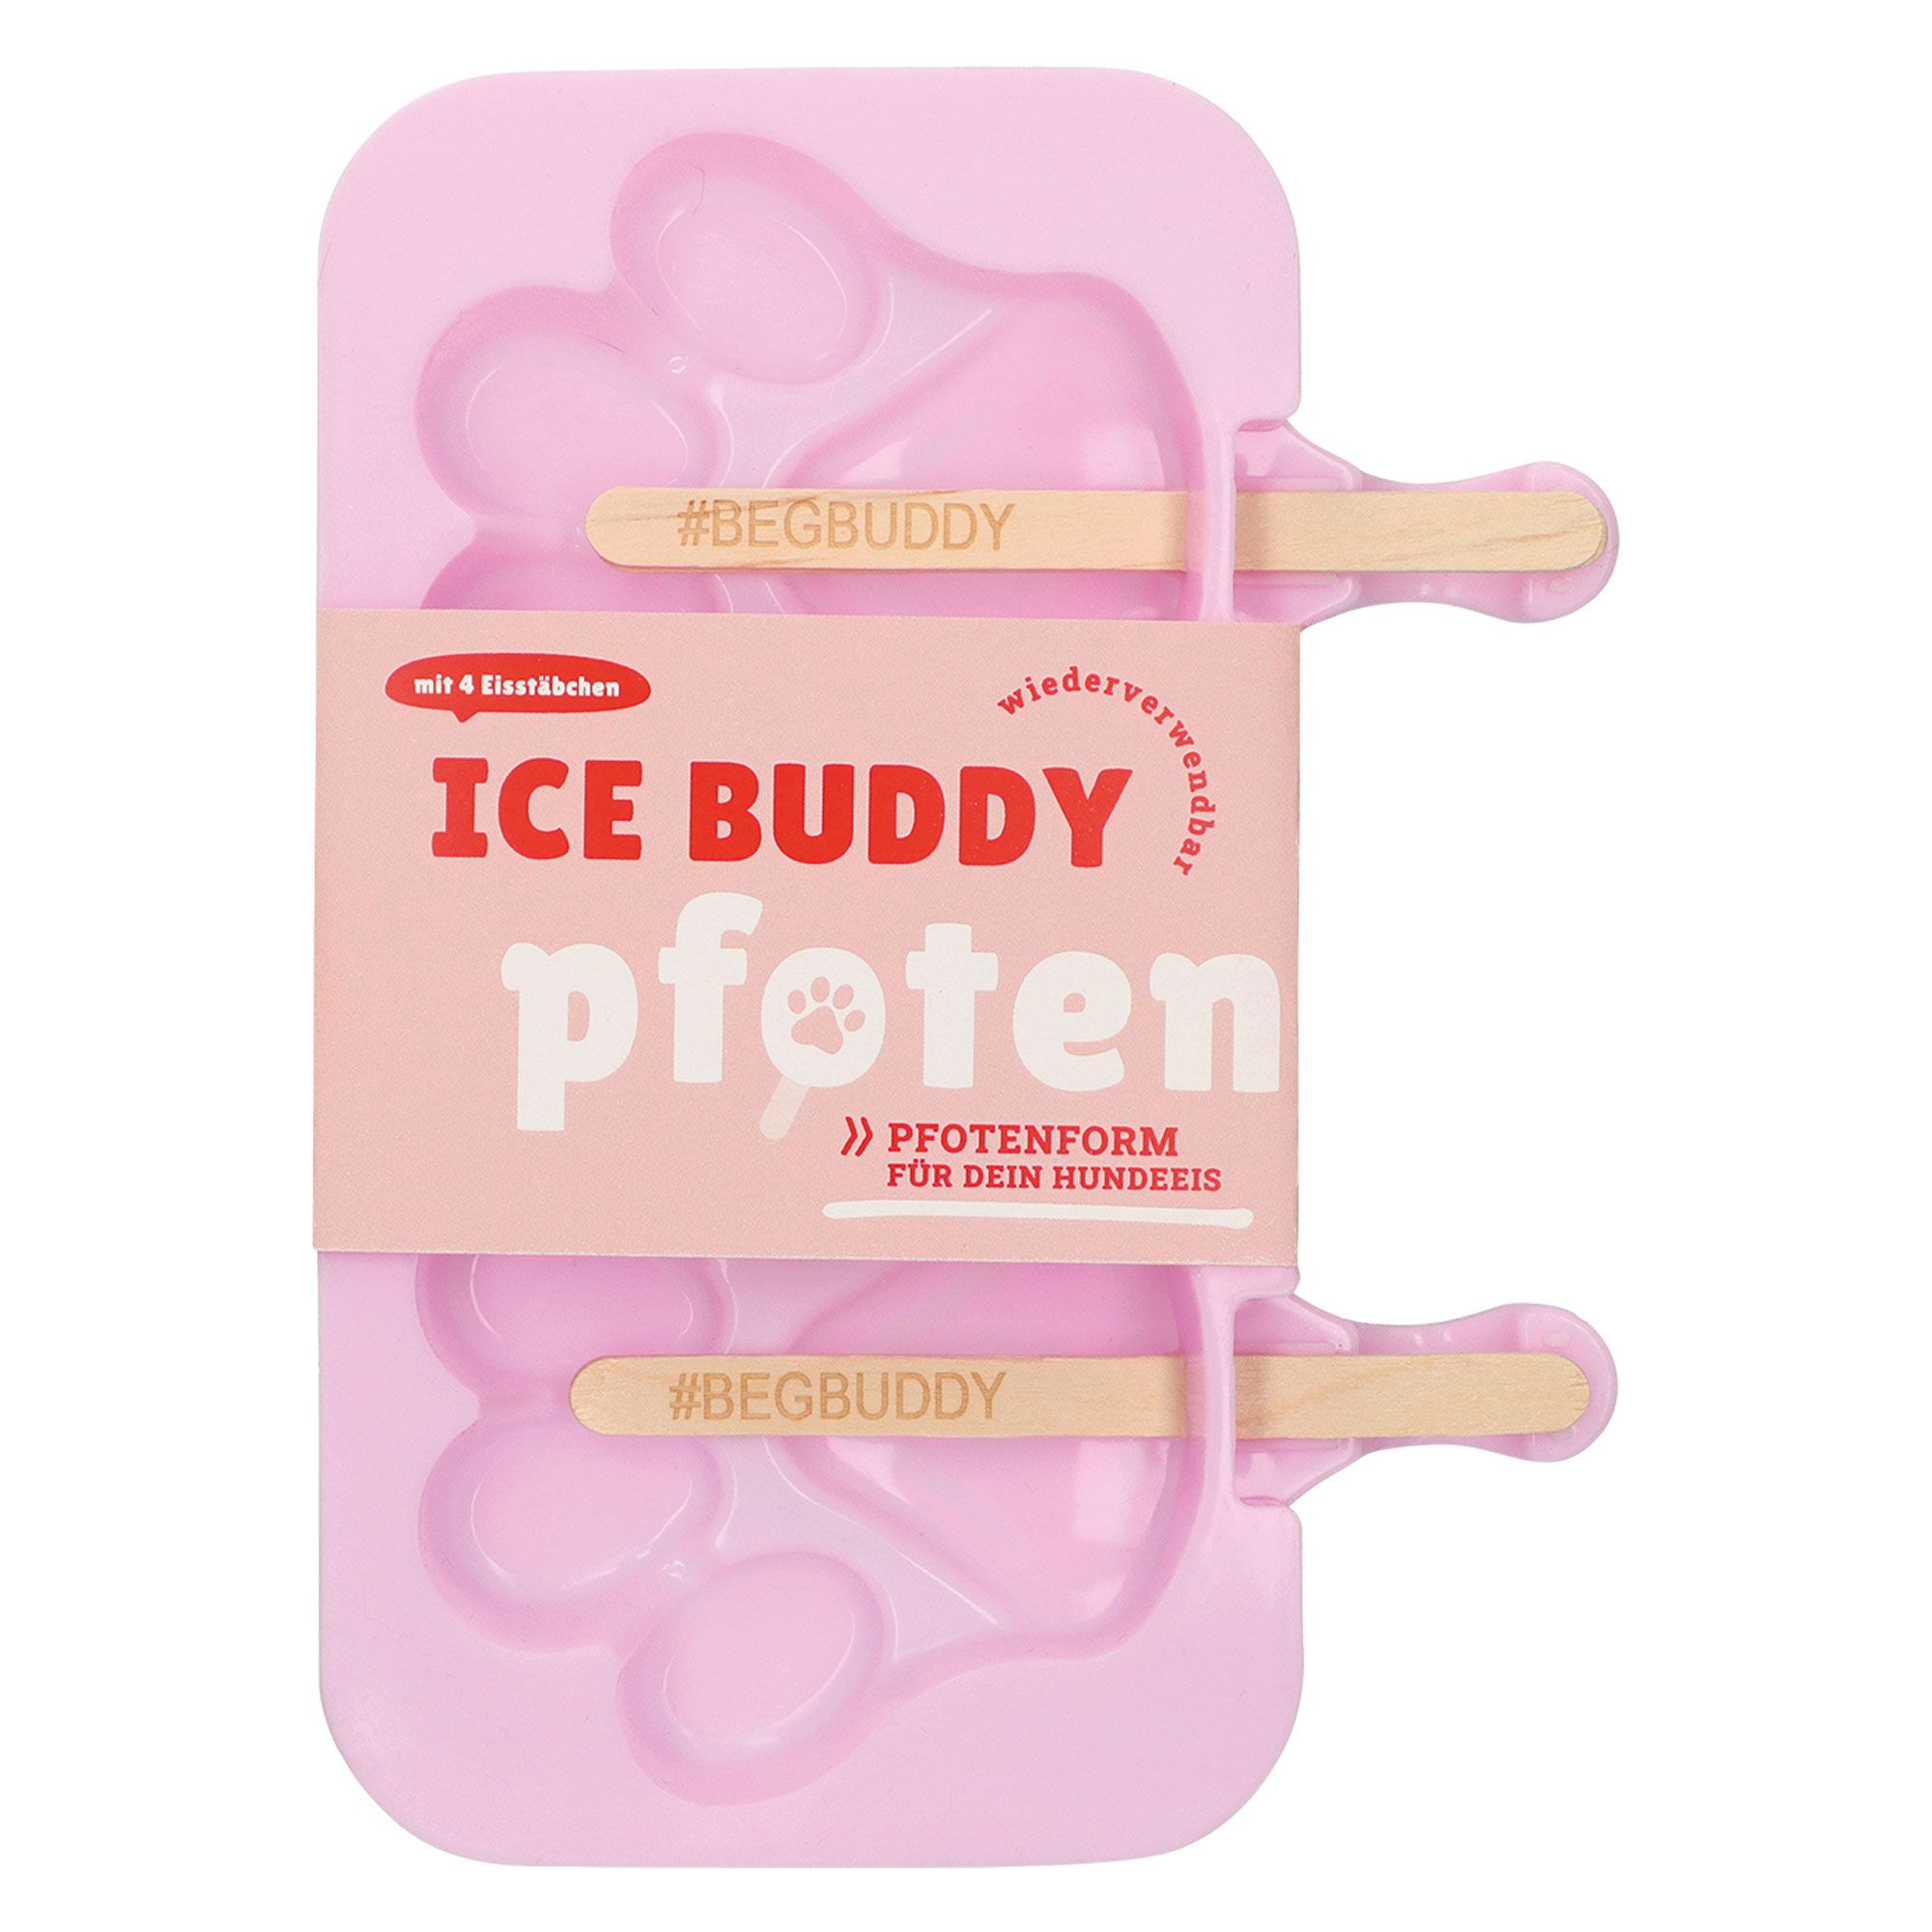 ICE BUDDY Pfoten-Form für Hundeeis - stellen Sie das perfekte Hunde-Eis einfach selbst her